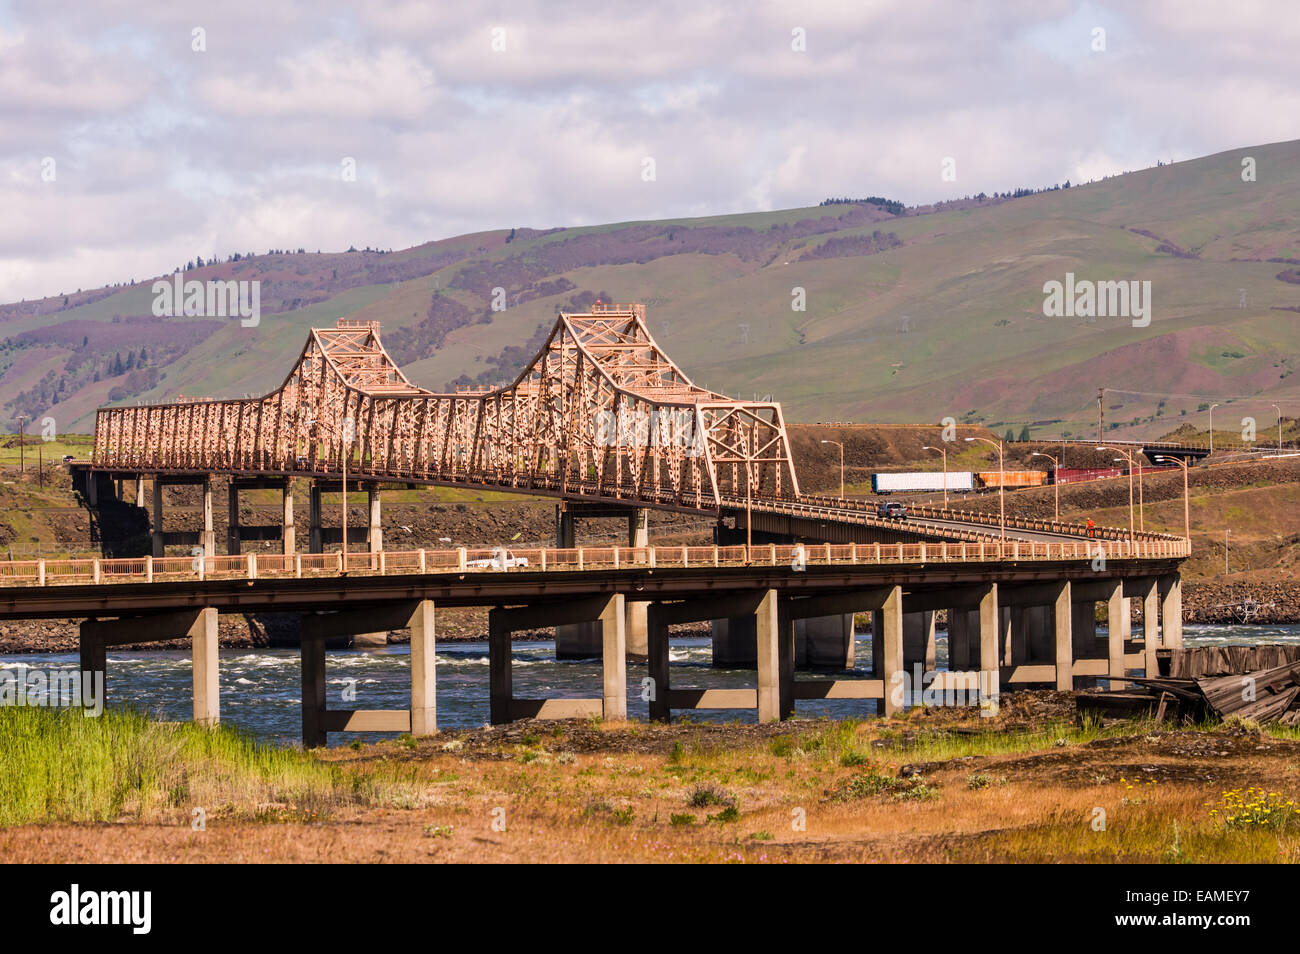 Le Département de la passerelle, un pont en treillis cantilever en acier traverse le fleuve Columbia. The Dalles, Oregon Banque D'Images